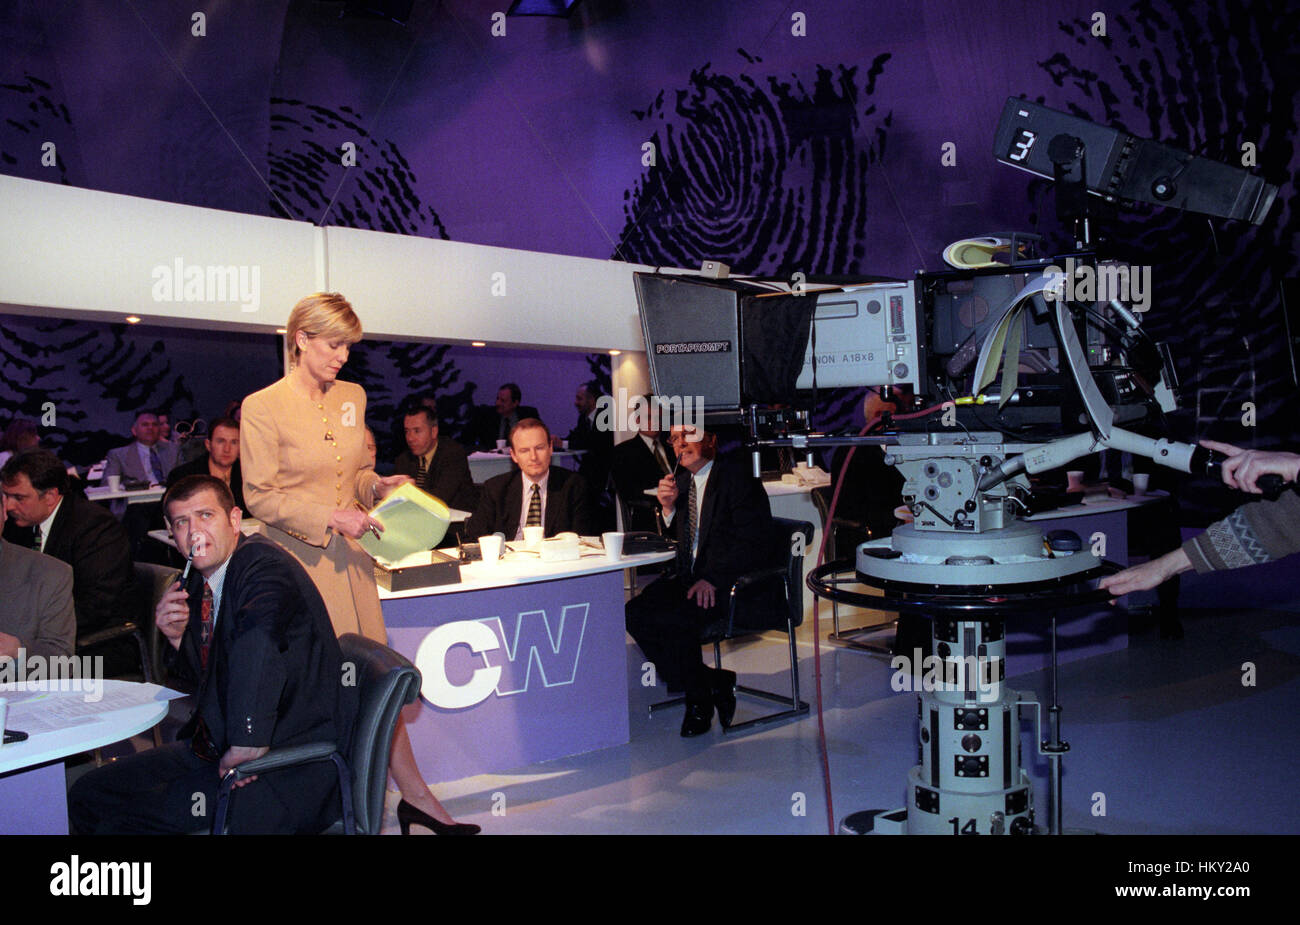 La diffusion de programme de télévision Crimewatch présentateur avec Jill Dando - Mardi 23 Février 1999 Banque D'Images